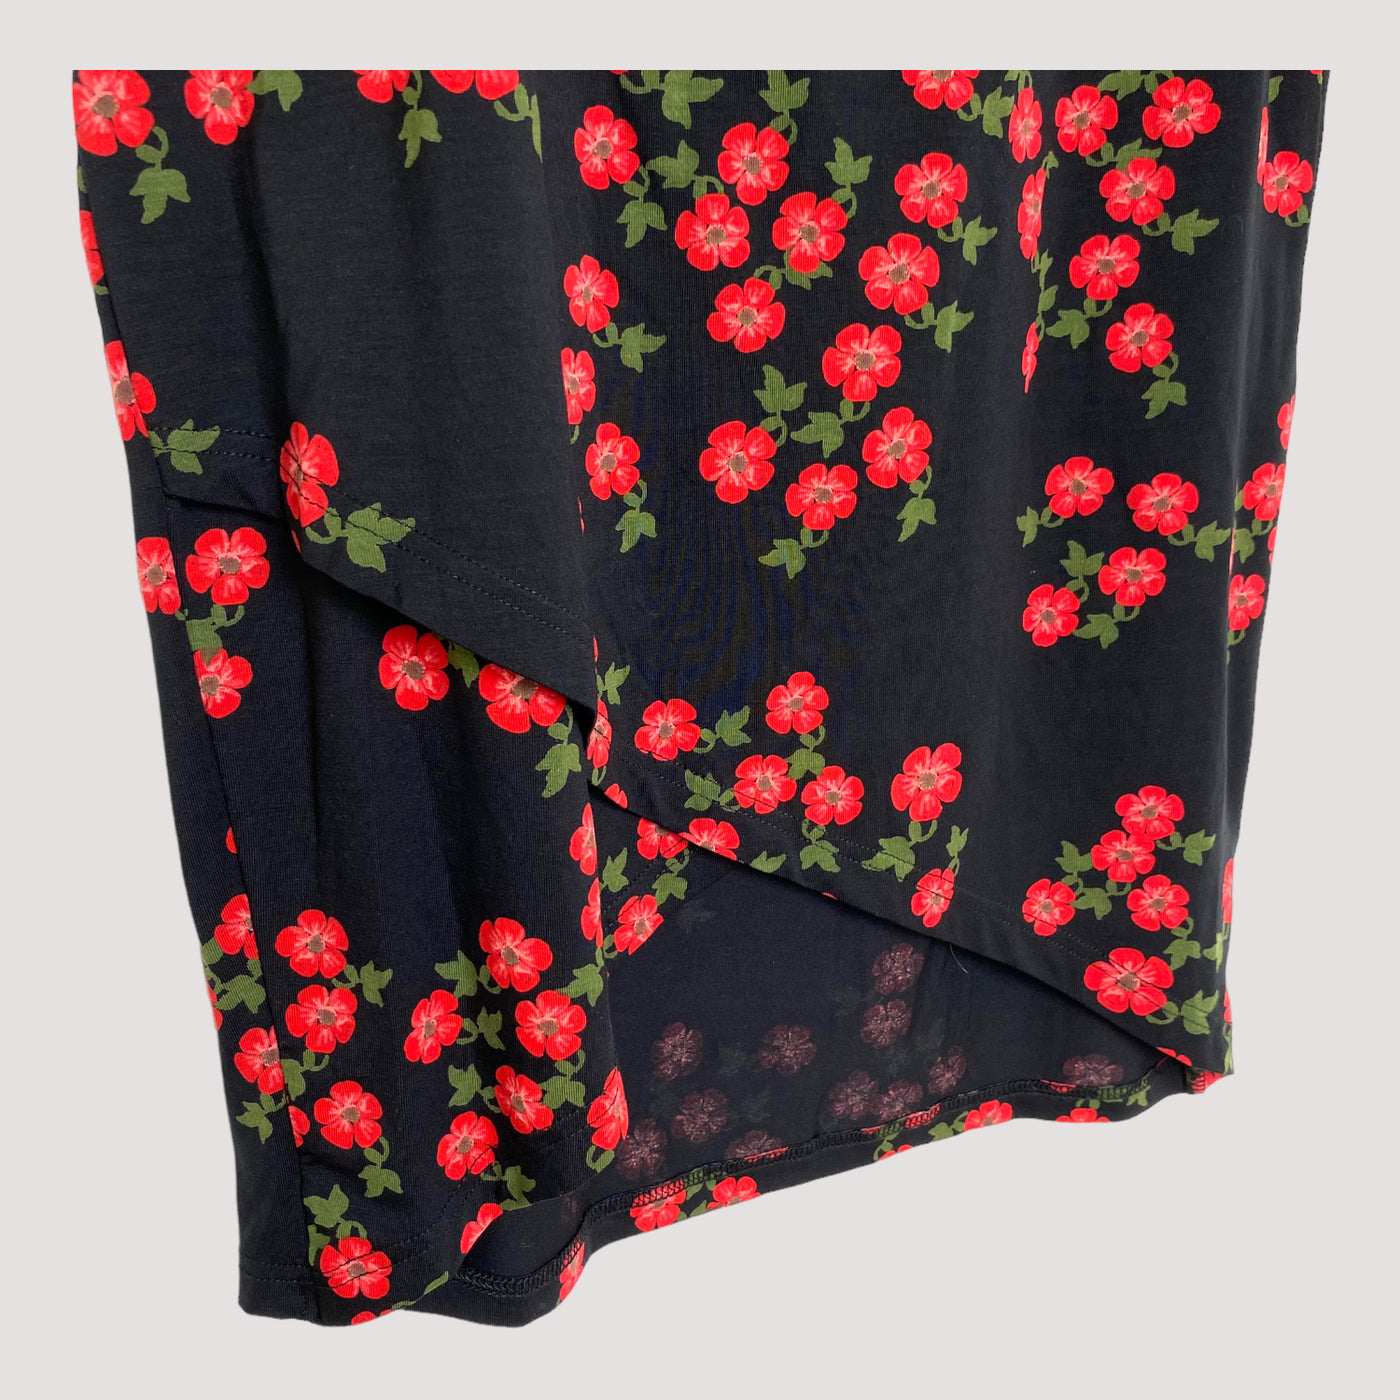 Blaa lyocell skirt, meadow | woman M